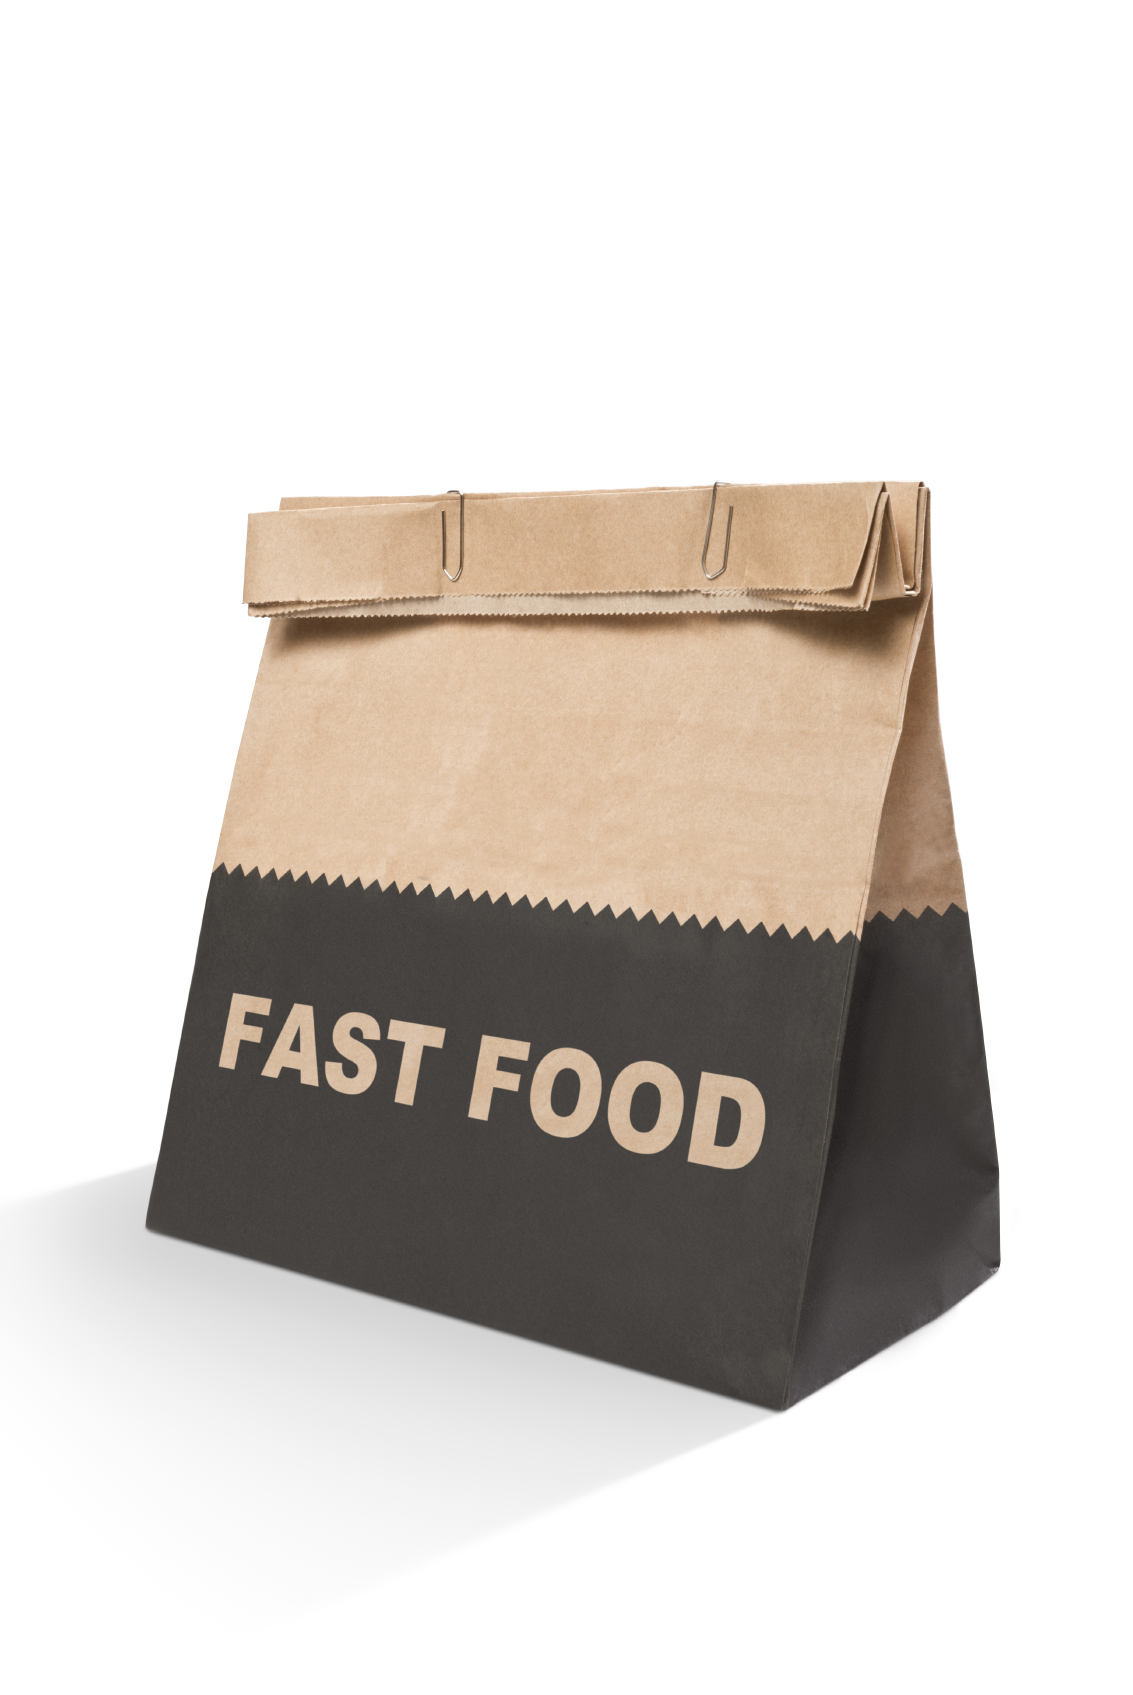 BEWARE: Chemicals in Fast Food Packaging